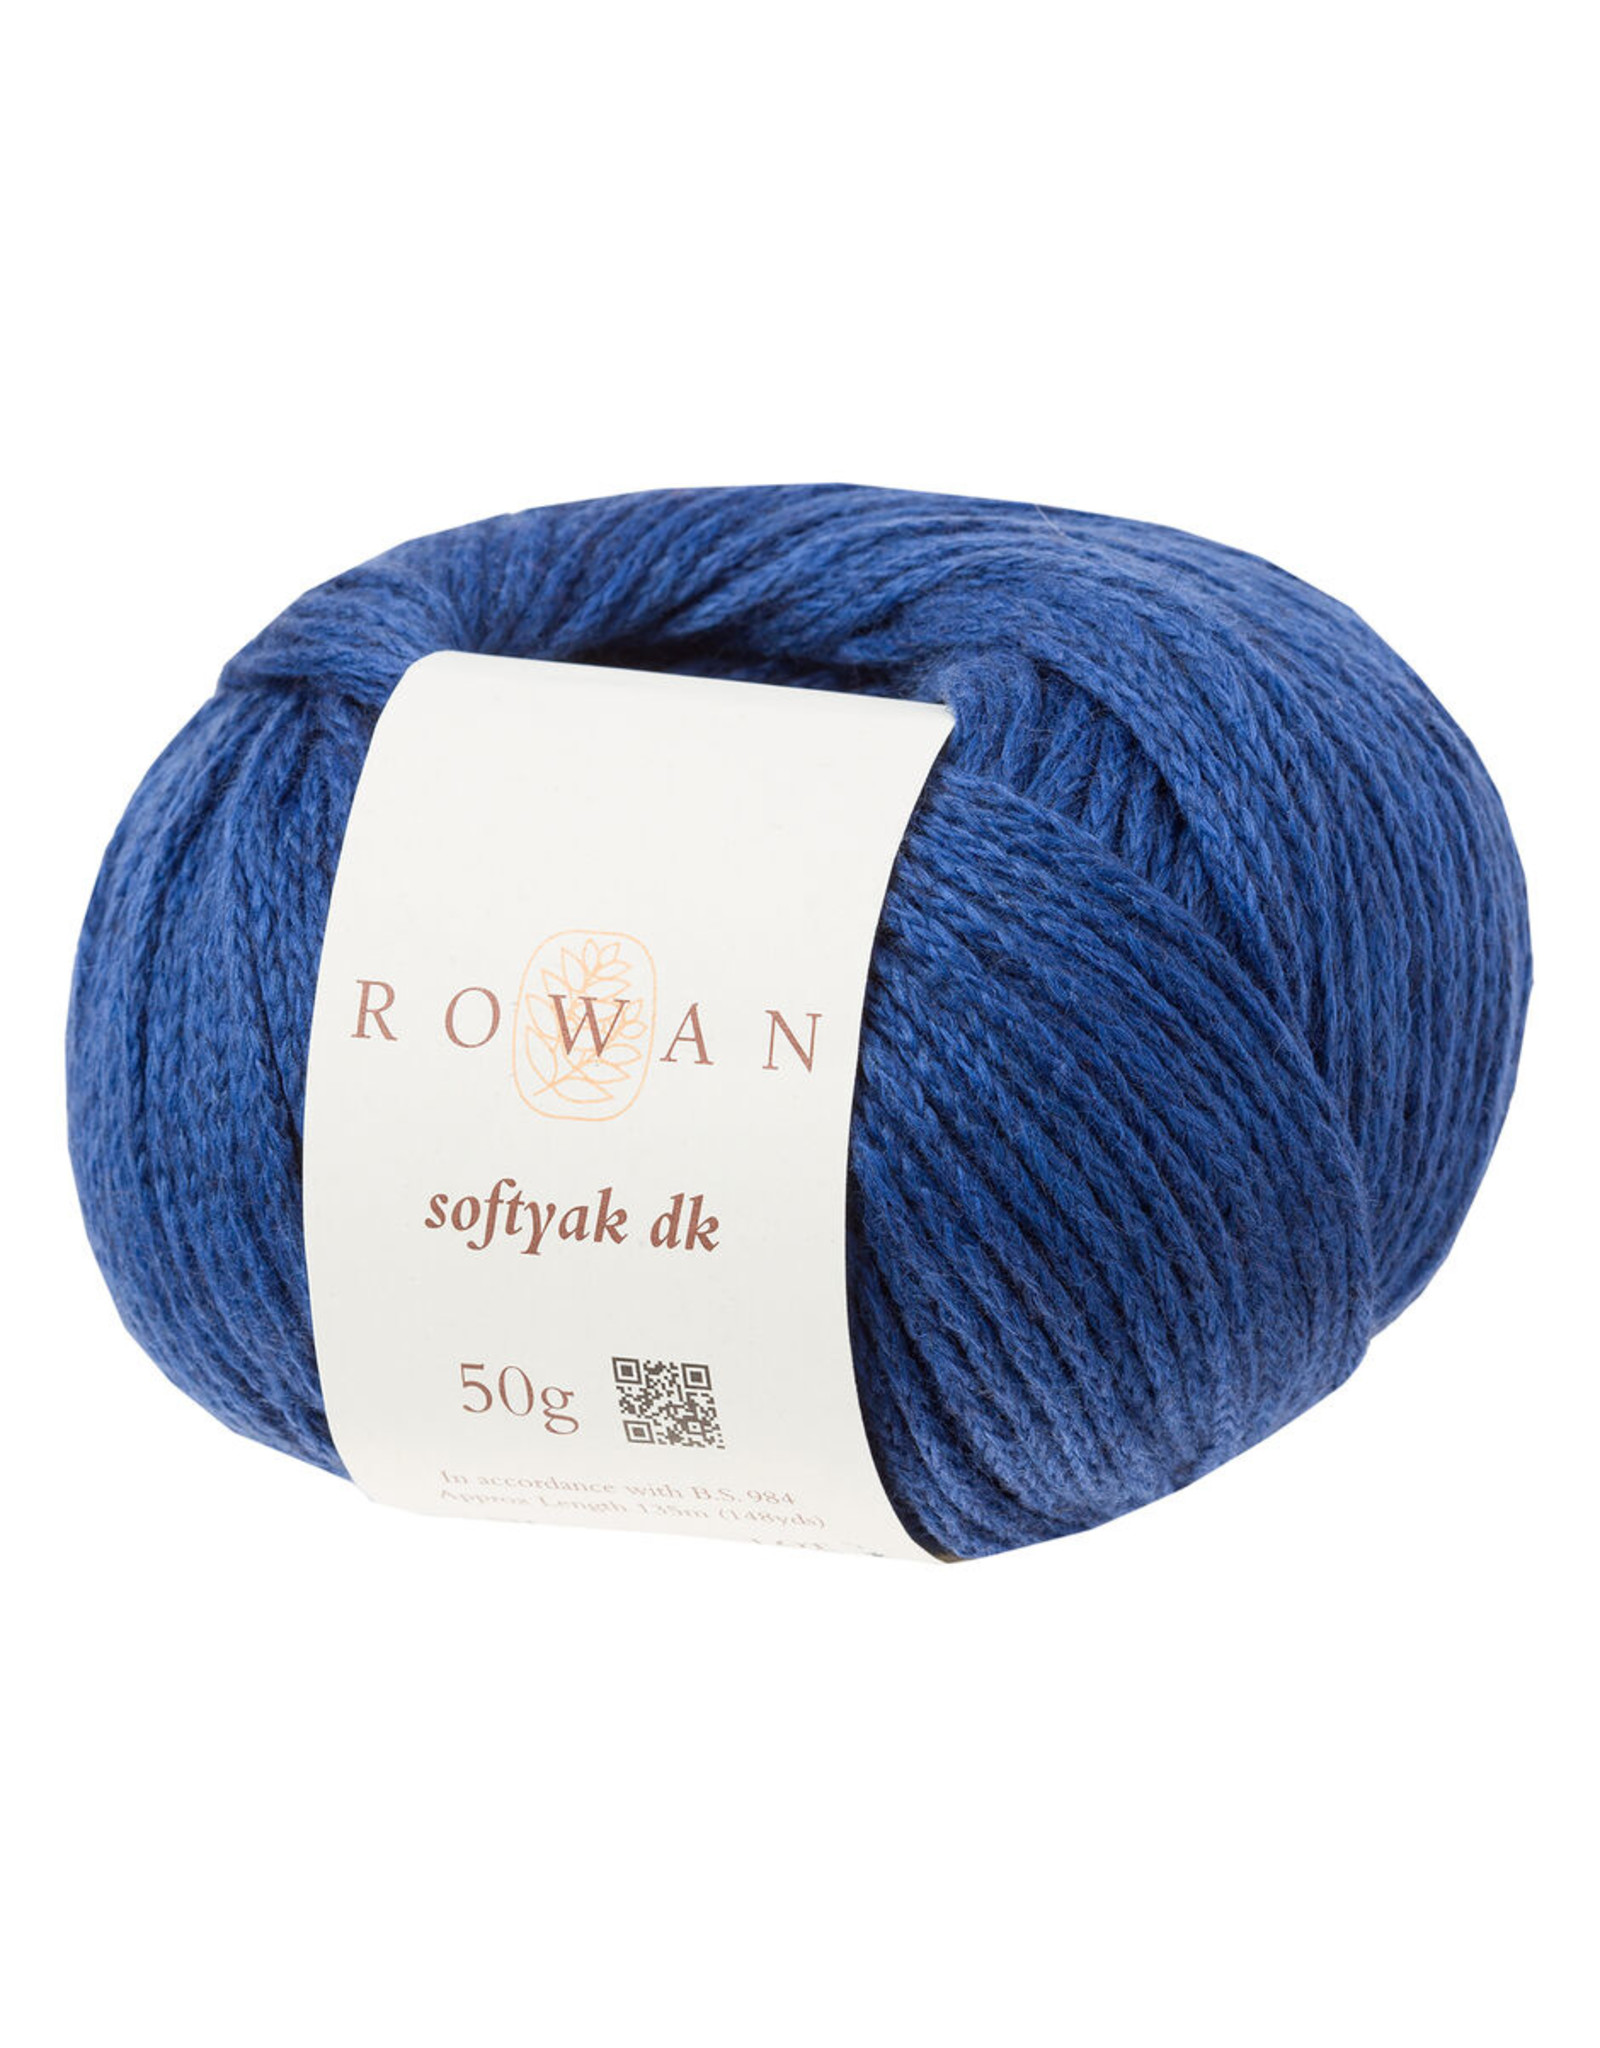 Rowan Rowan Softyak DK243